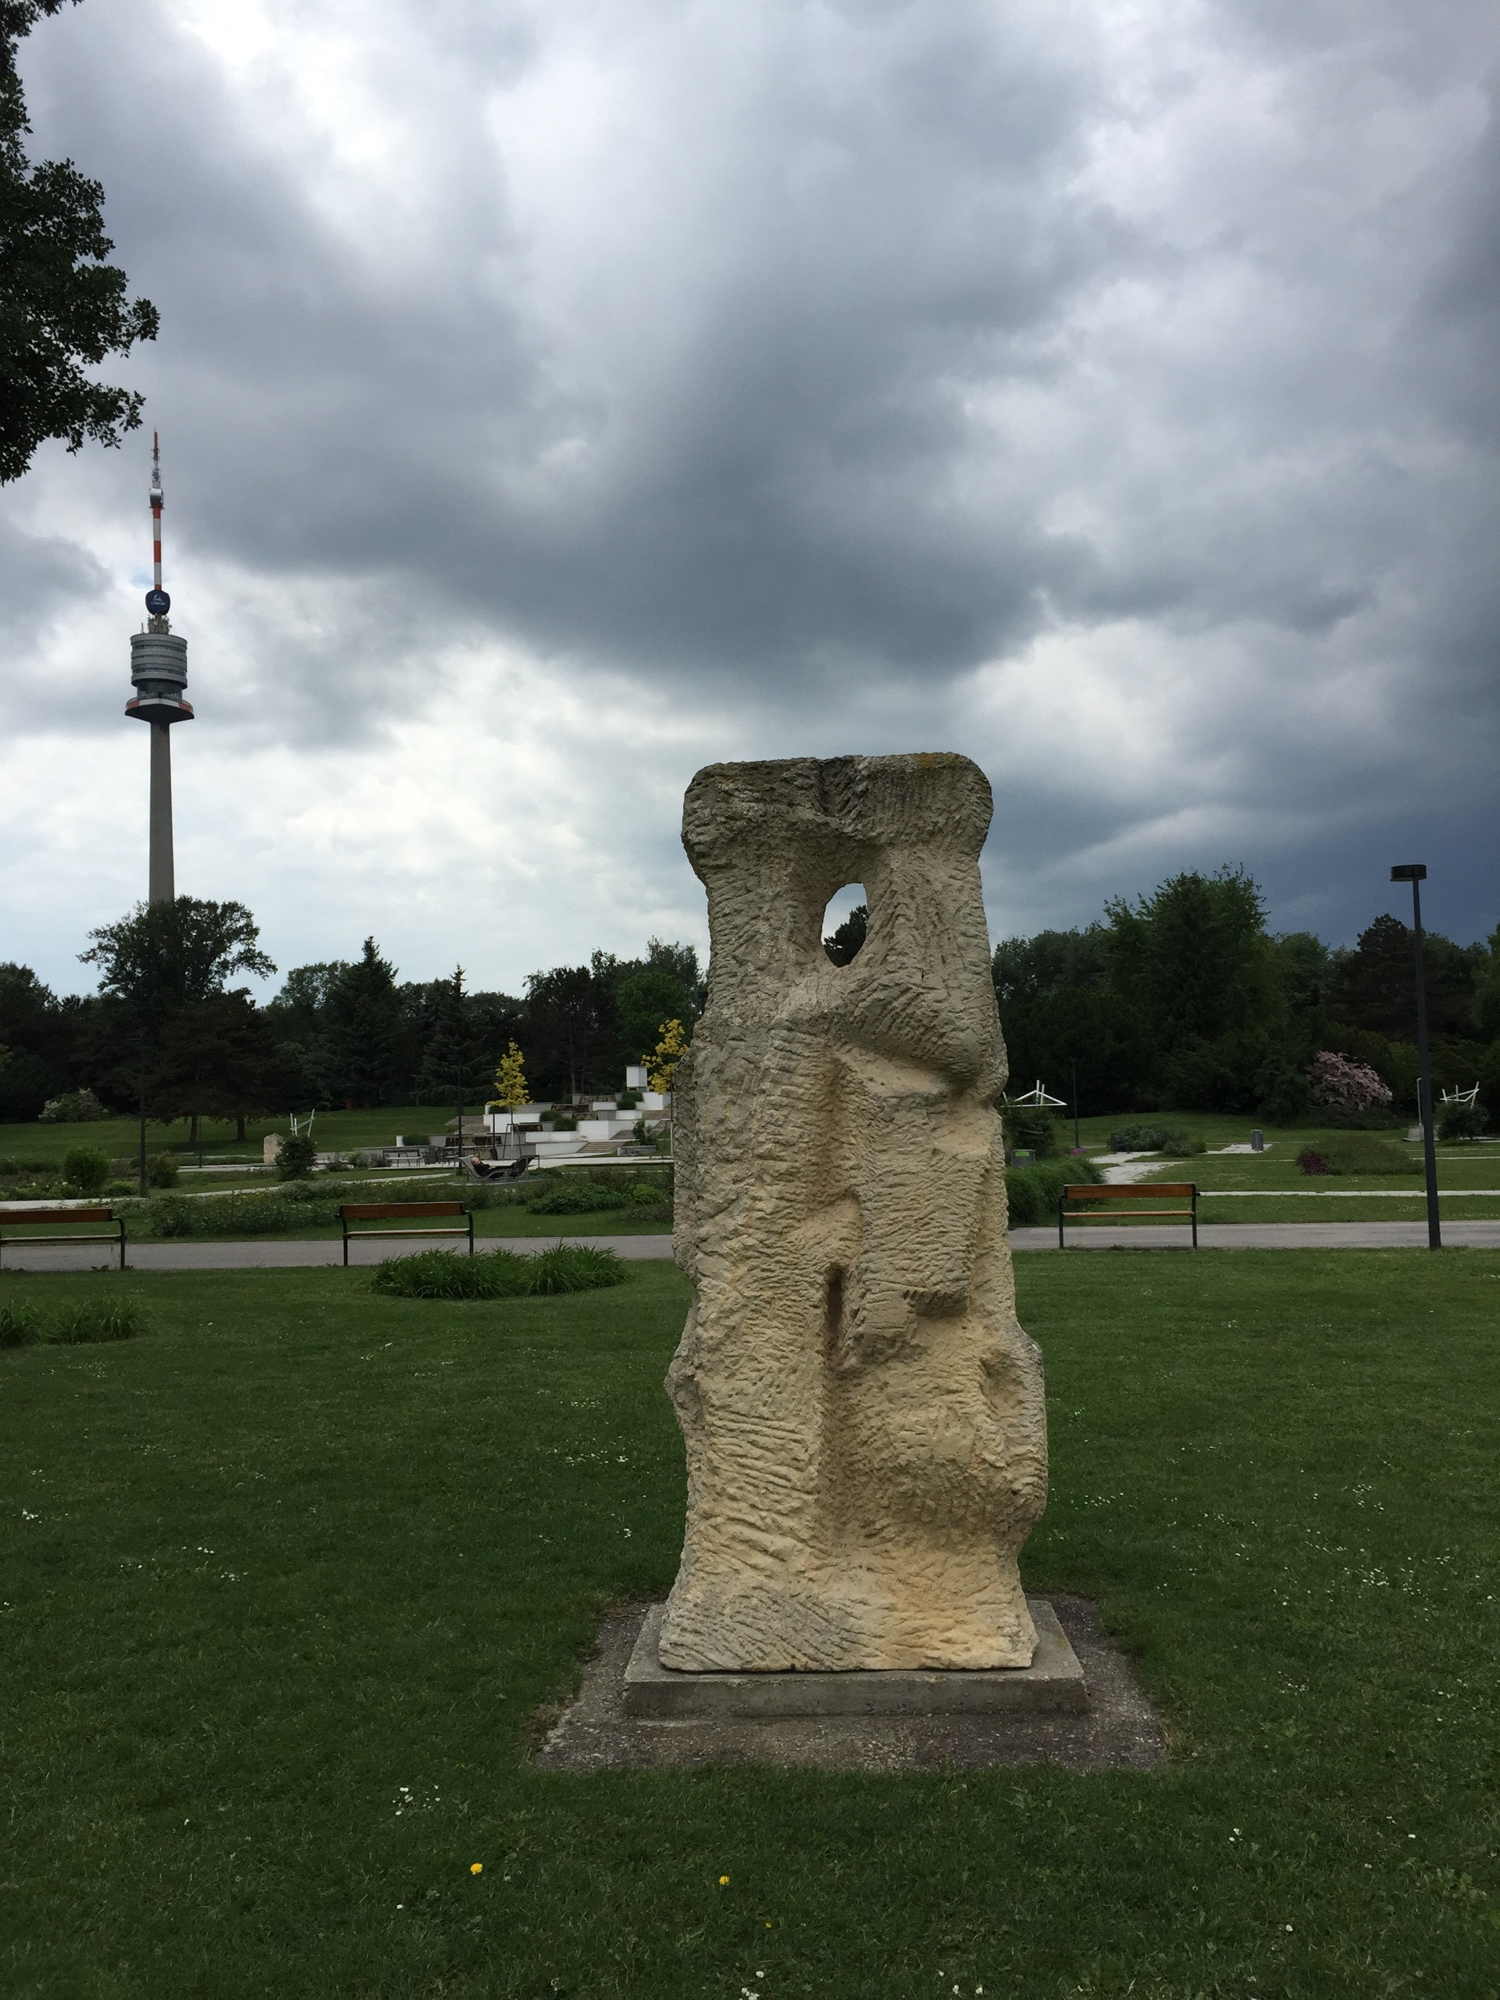 Donaupark, Skulptur im Vordergrund, dahinter Donauturm und bewölkter Himmel